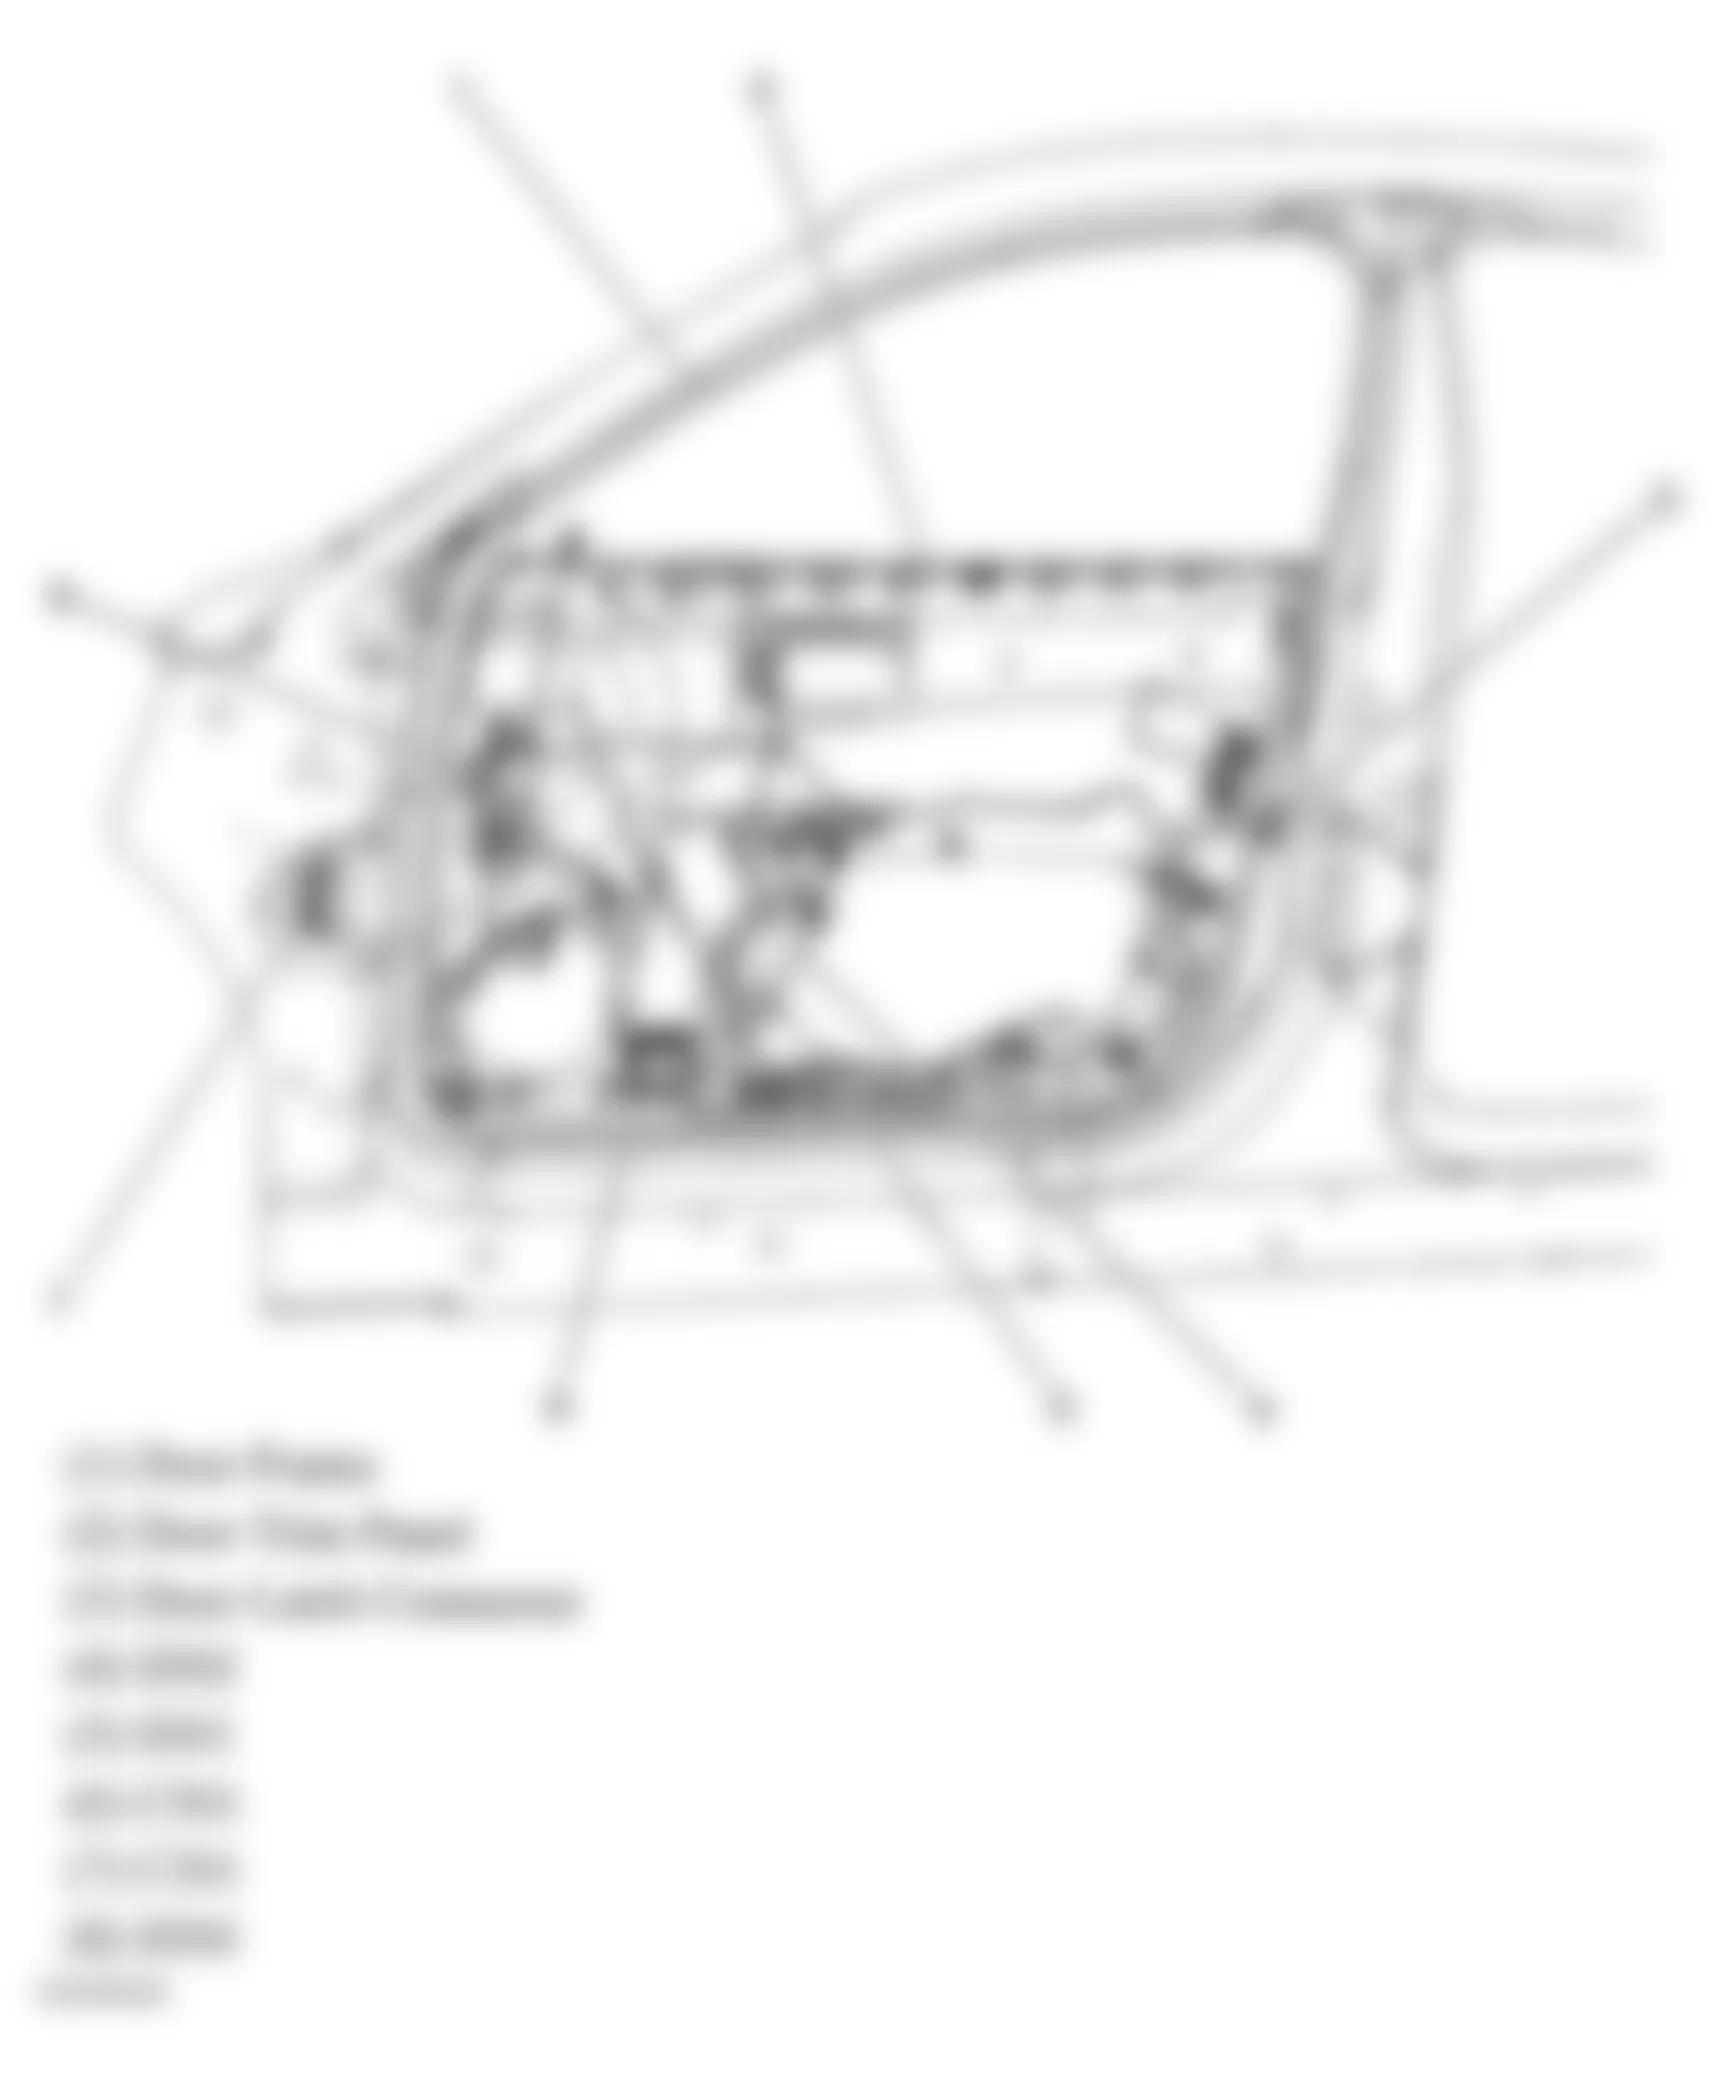 Buick Allure CXL 2005 - Component Locations -  Drivers Door